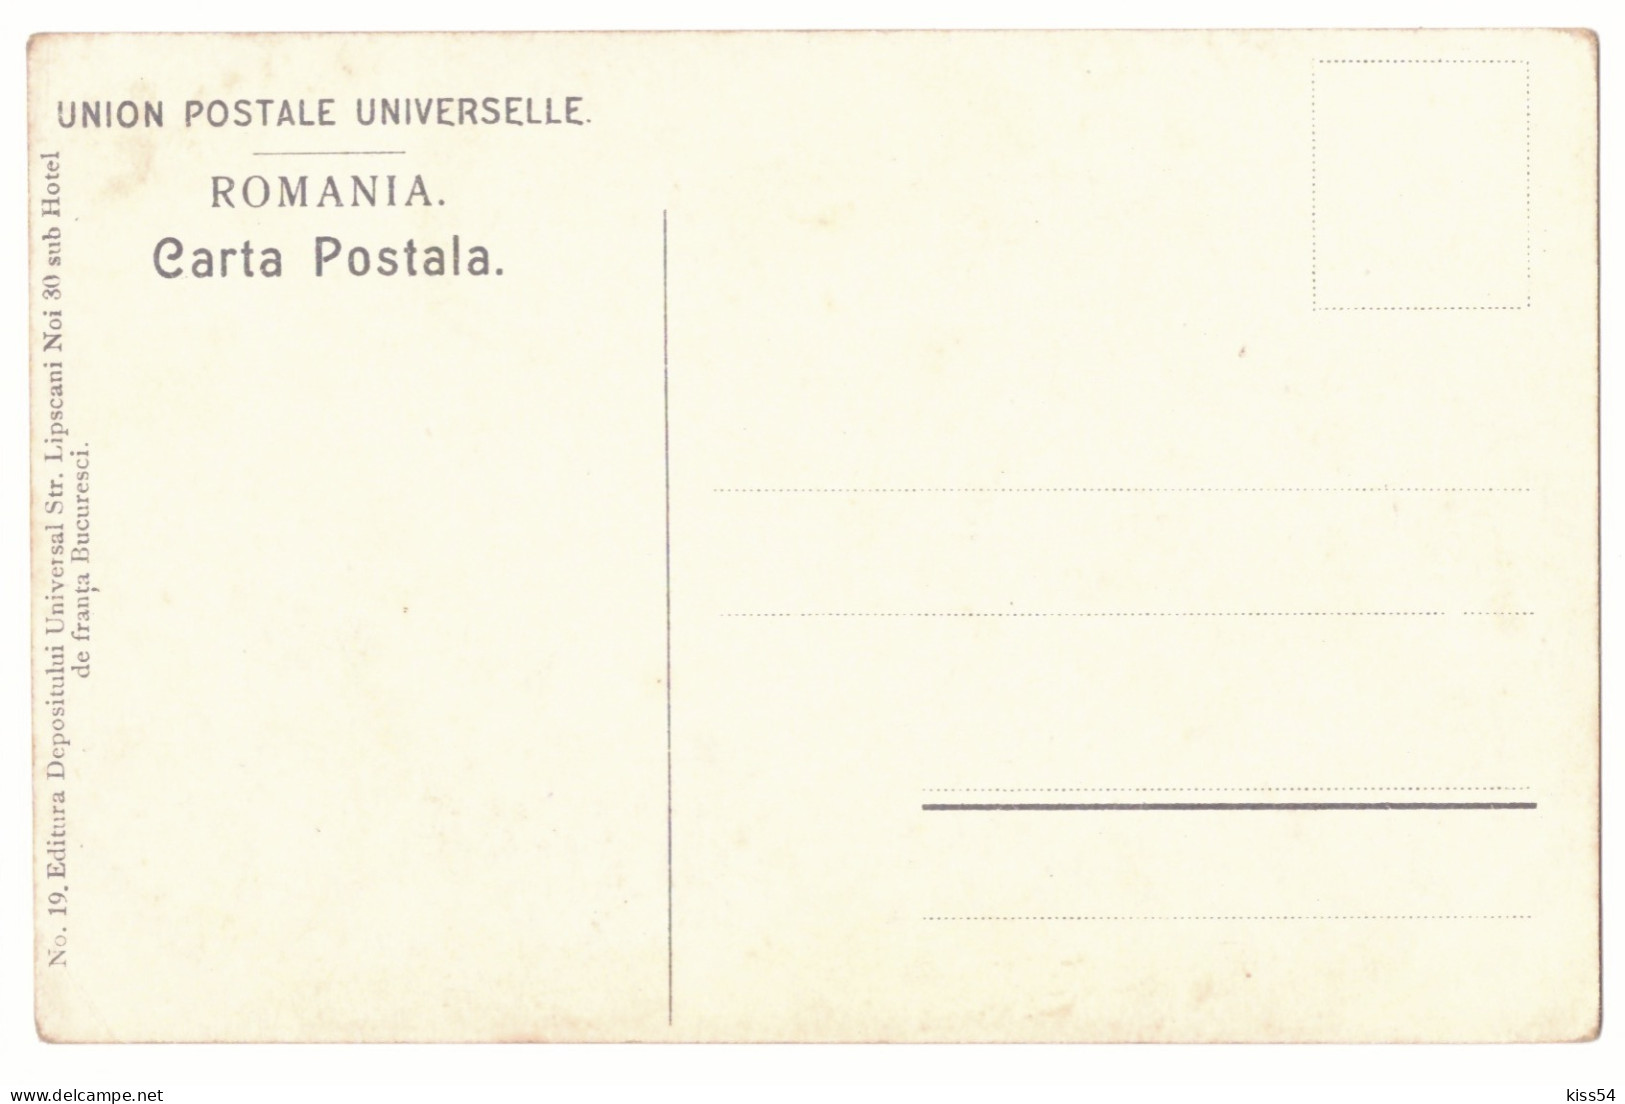 RO 40 - 21166 ETHNIC, Dansatori, Romania - Old Postcard - Unused - Rumänien